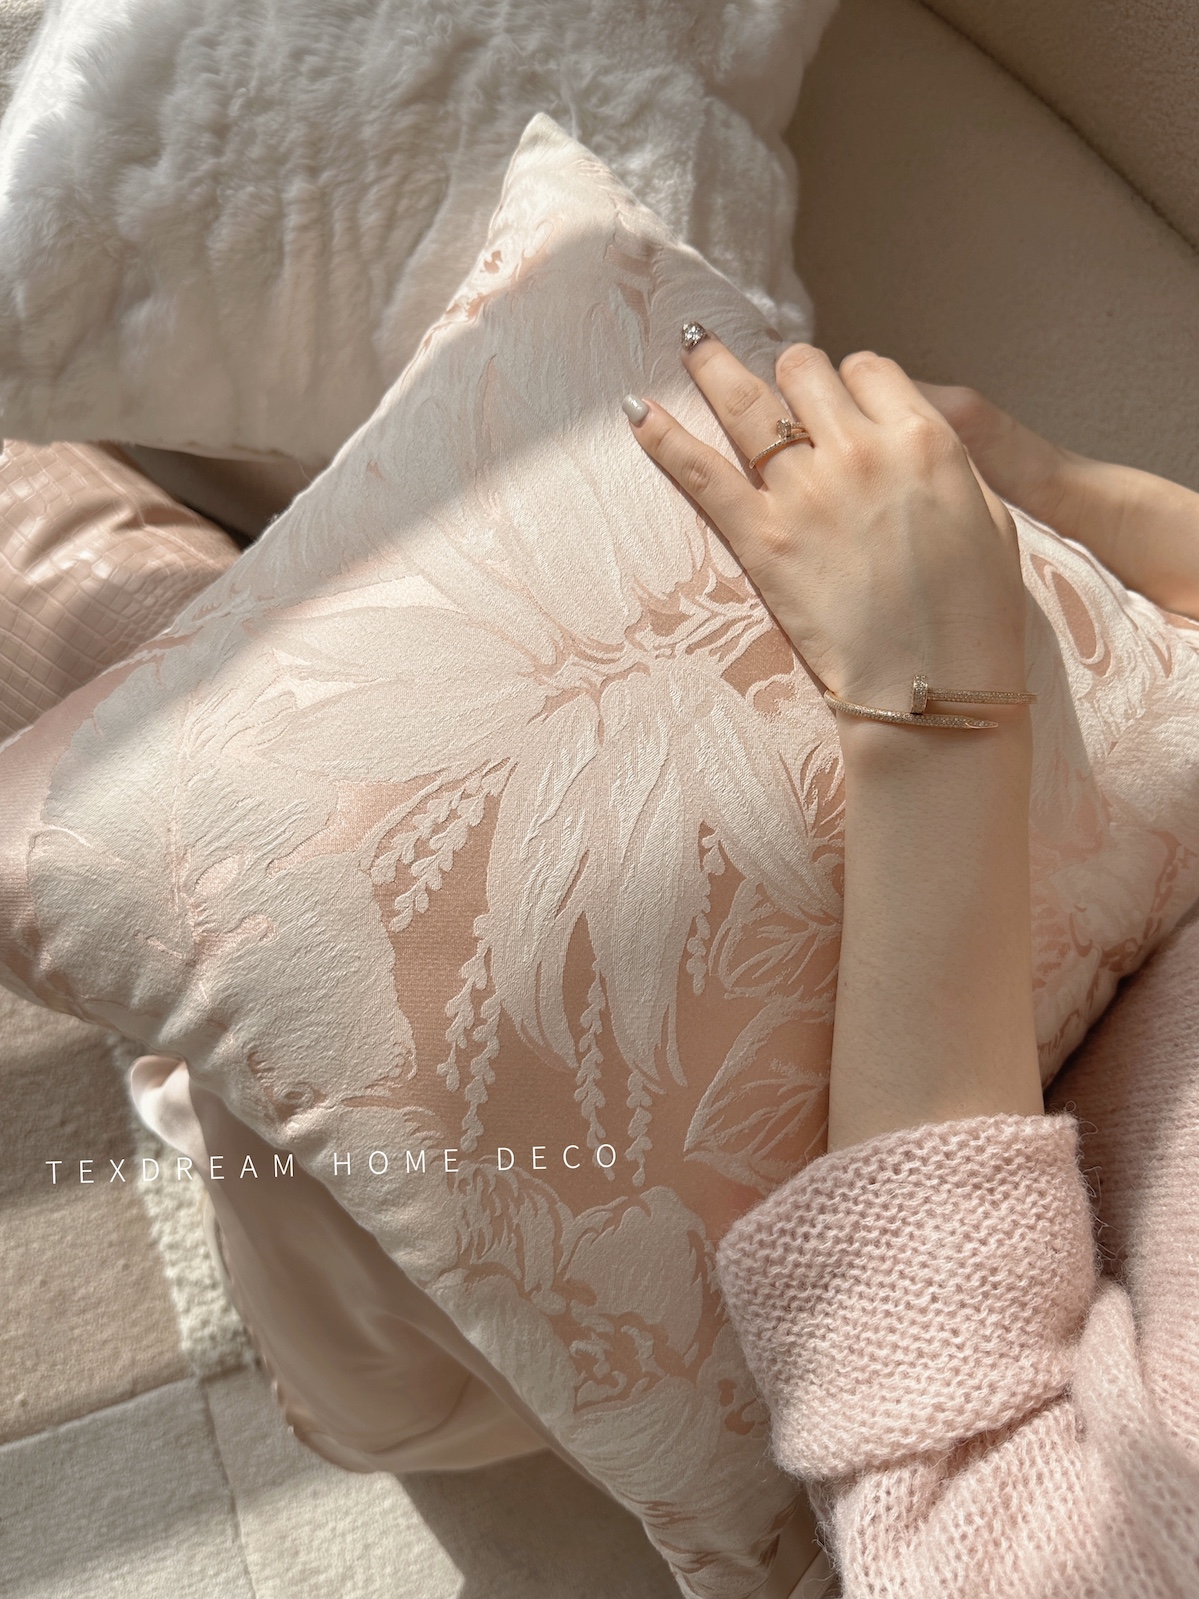 粉色薔薇花卉靠墊 法式復古抱枕客廳沙發靠墊套 裝飾樣板間靠枕